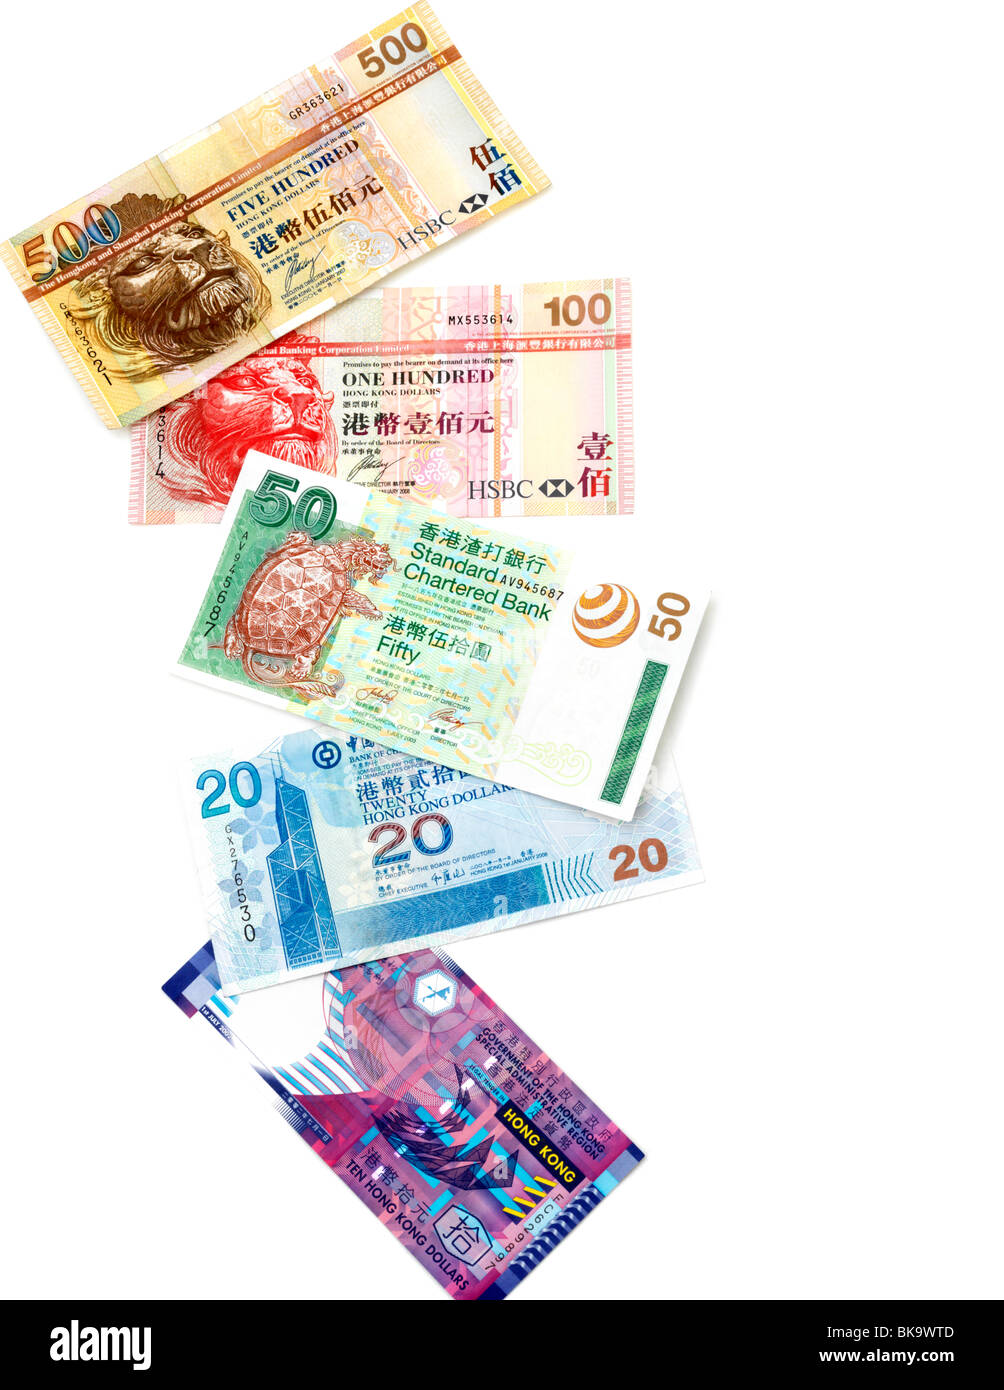 Hong Kong Banknotes 10, 20, 50, 100, 500 Dollars Stock Photo